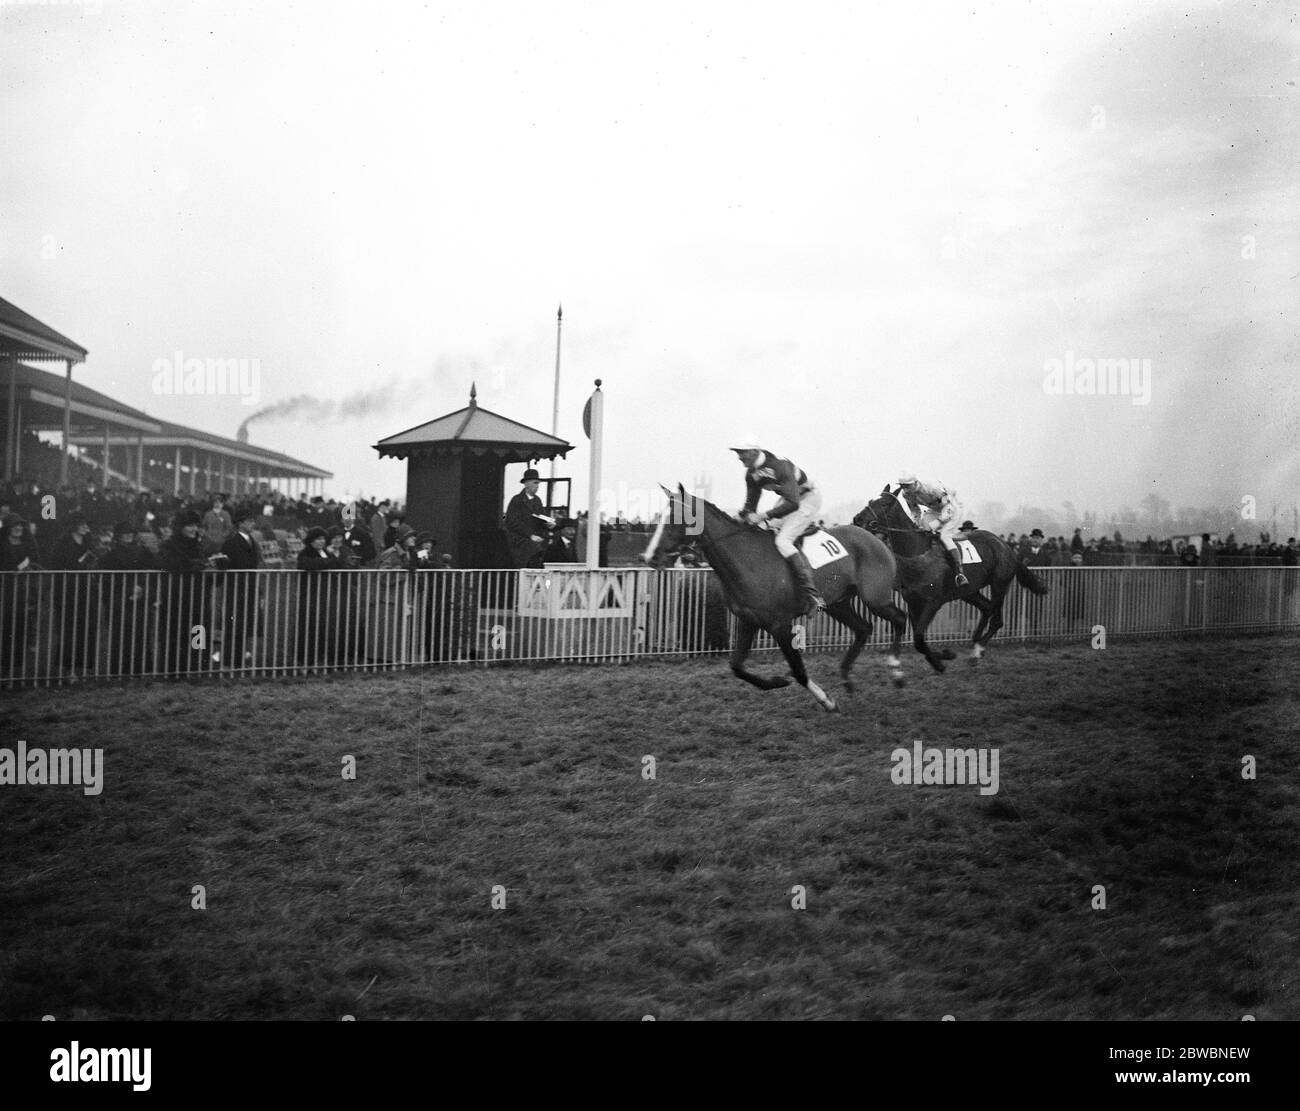 Lord Westmoreland reitet sein eigenes Pferd zum Sieg. Bei Hurst Park Lord Westmoreland ritt sein eigenes Pferd Phaco, das er persönlich trainiert, und gewann die Thames National Handicap flat race. Phaco gewinnt das Rennen. 15 Dezember 1923 Stockfoto